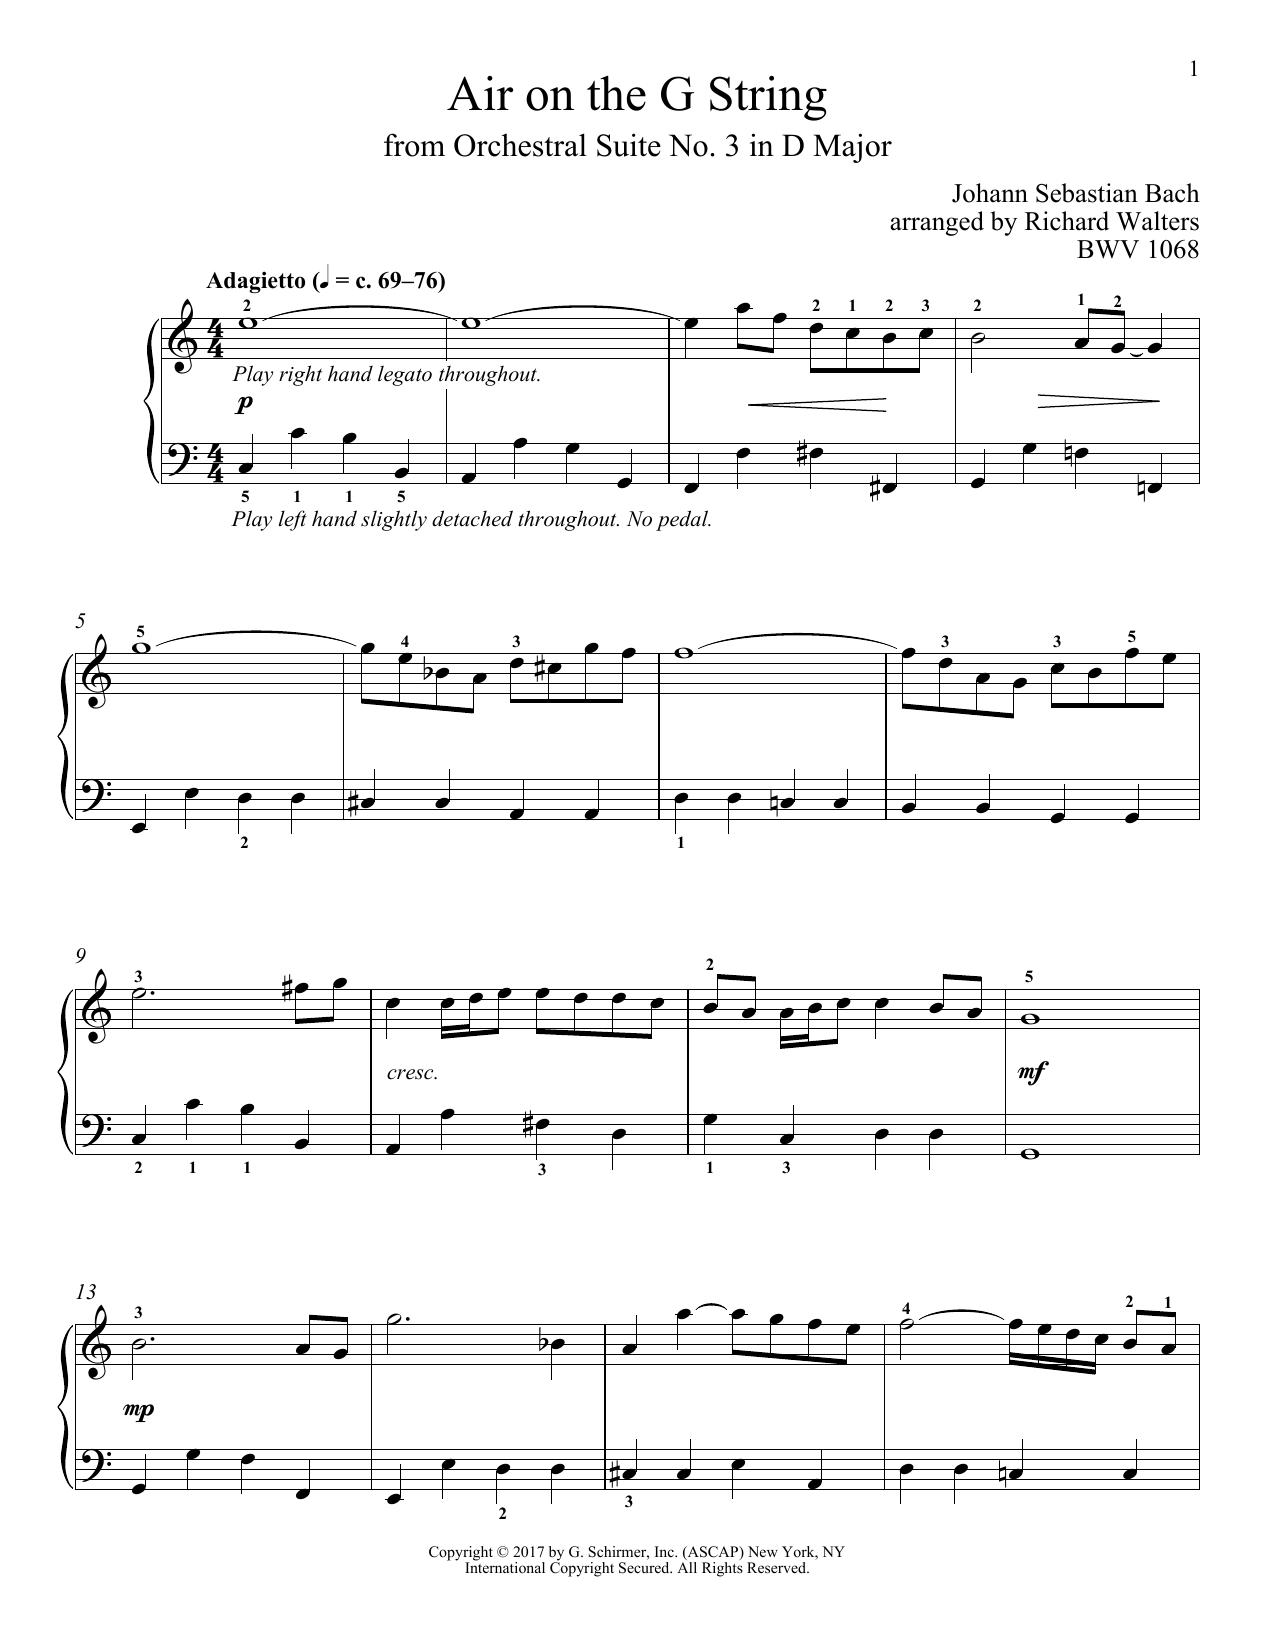 Johann Sebastian Bach Air (Air On The G String) Sheet Music Notes & Chords for Alto Saxophone Duet - Download or Print PDF